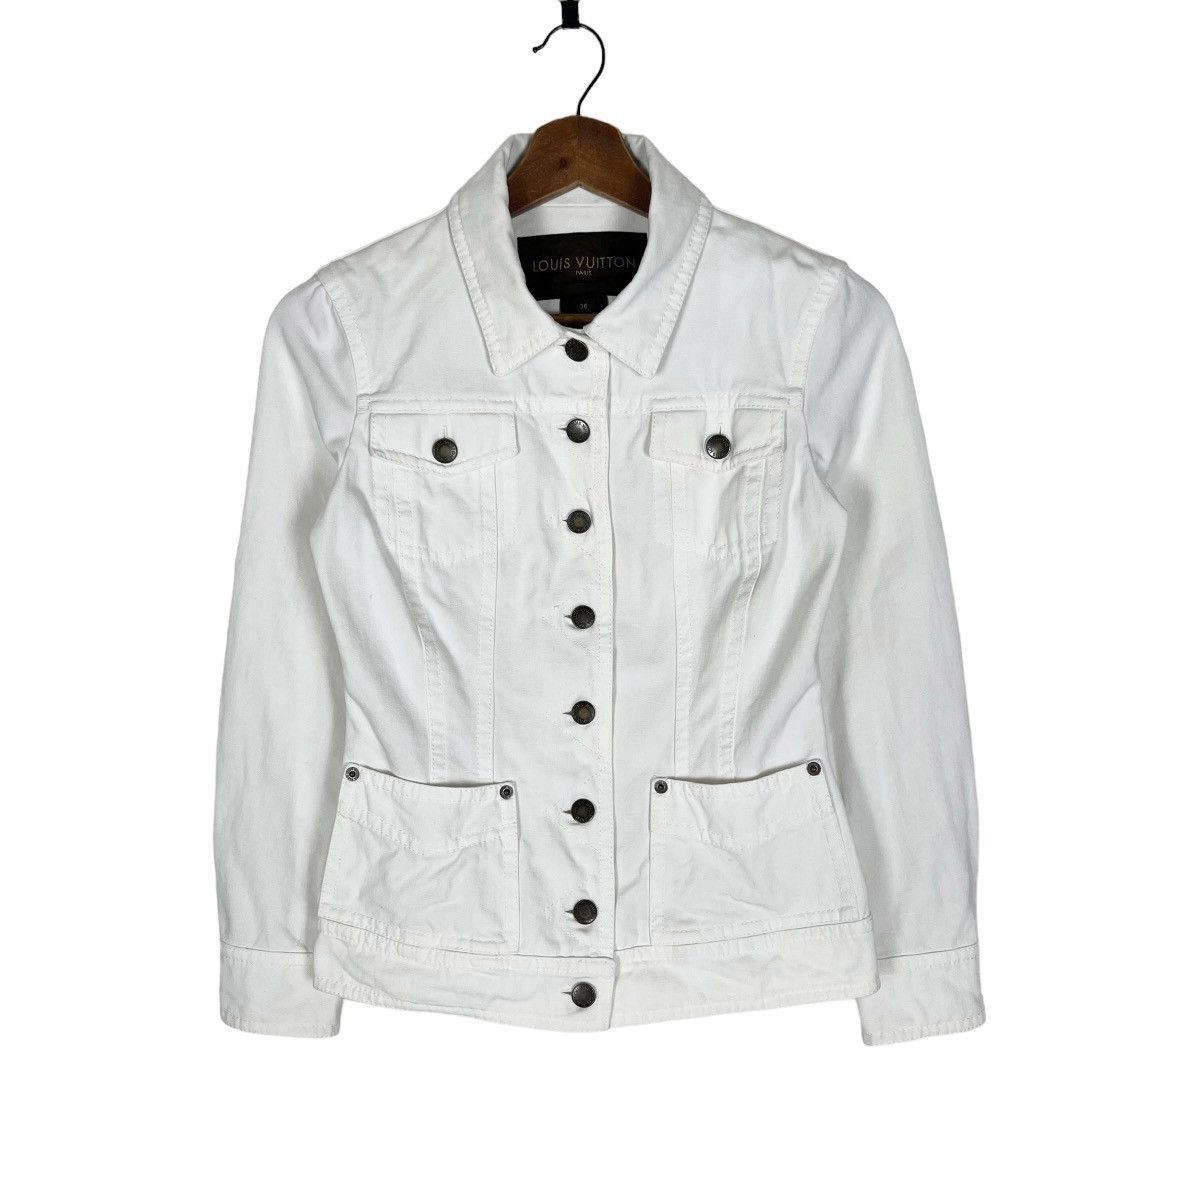 White Denim Jacket - 2